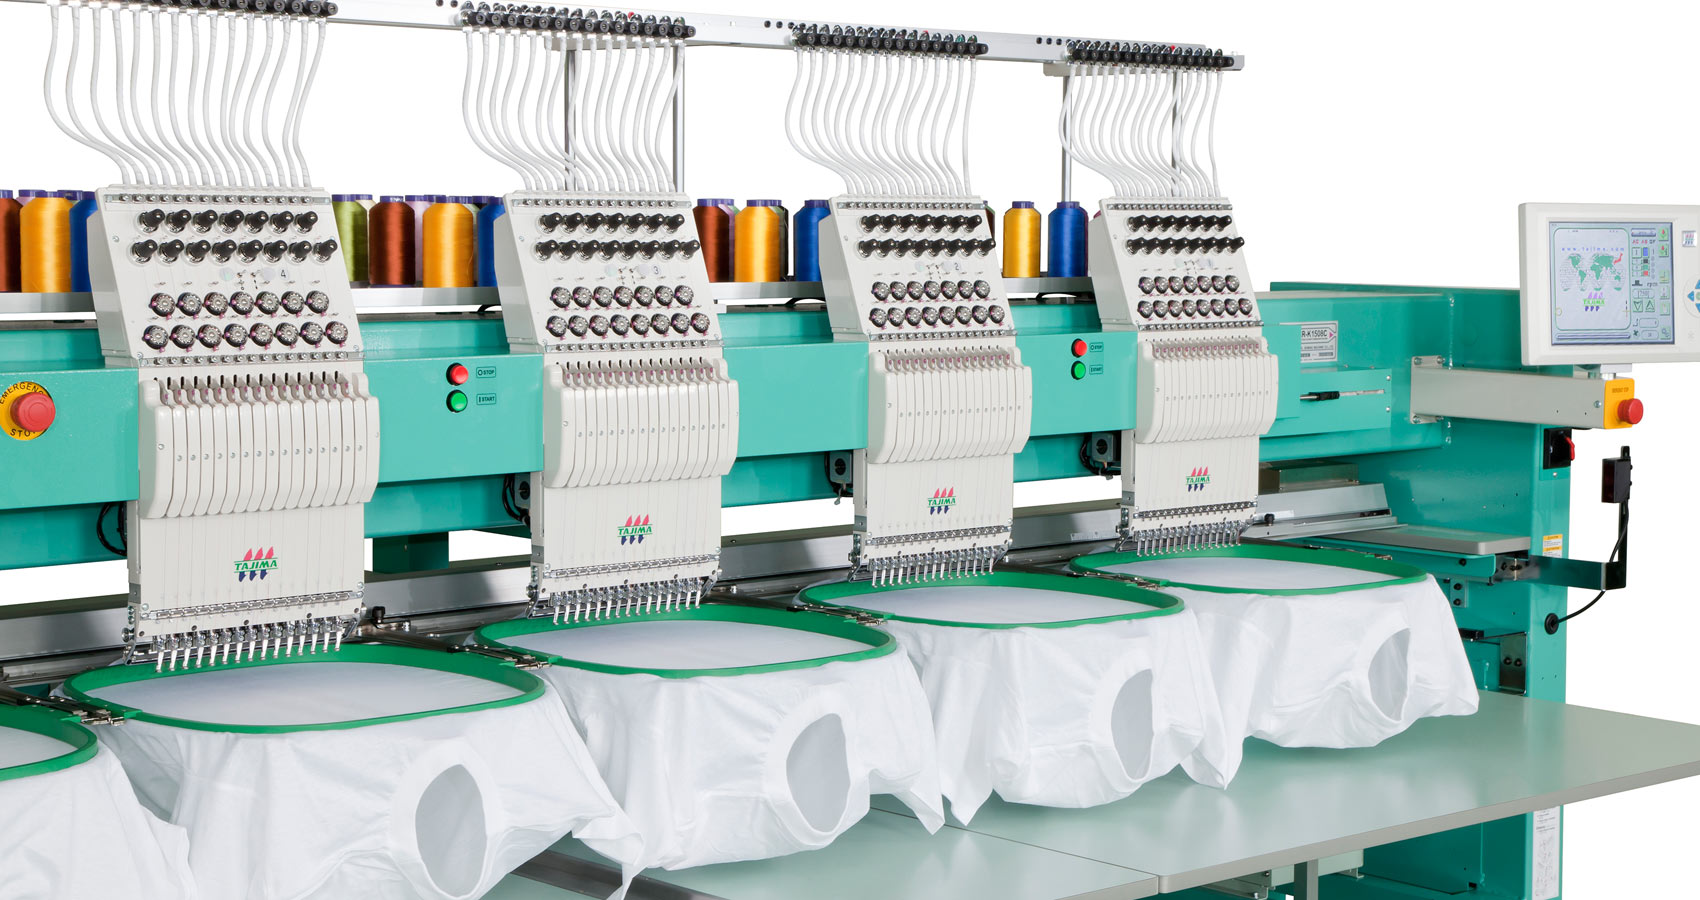 Tajima Multihead Embroidery Machine